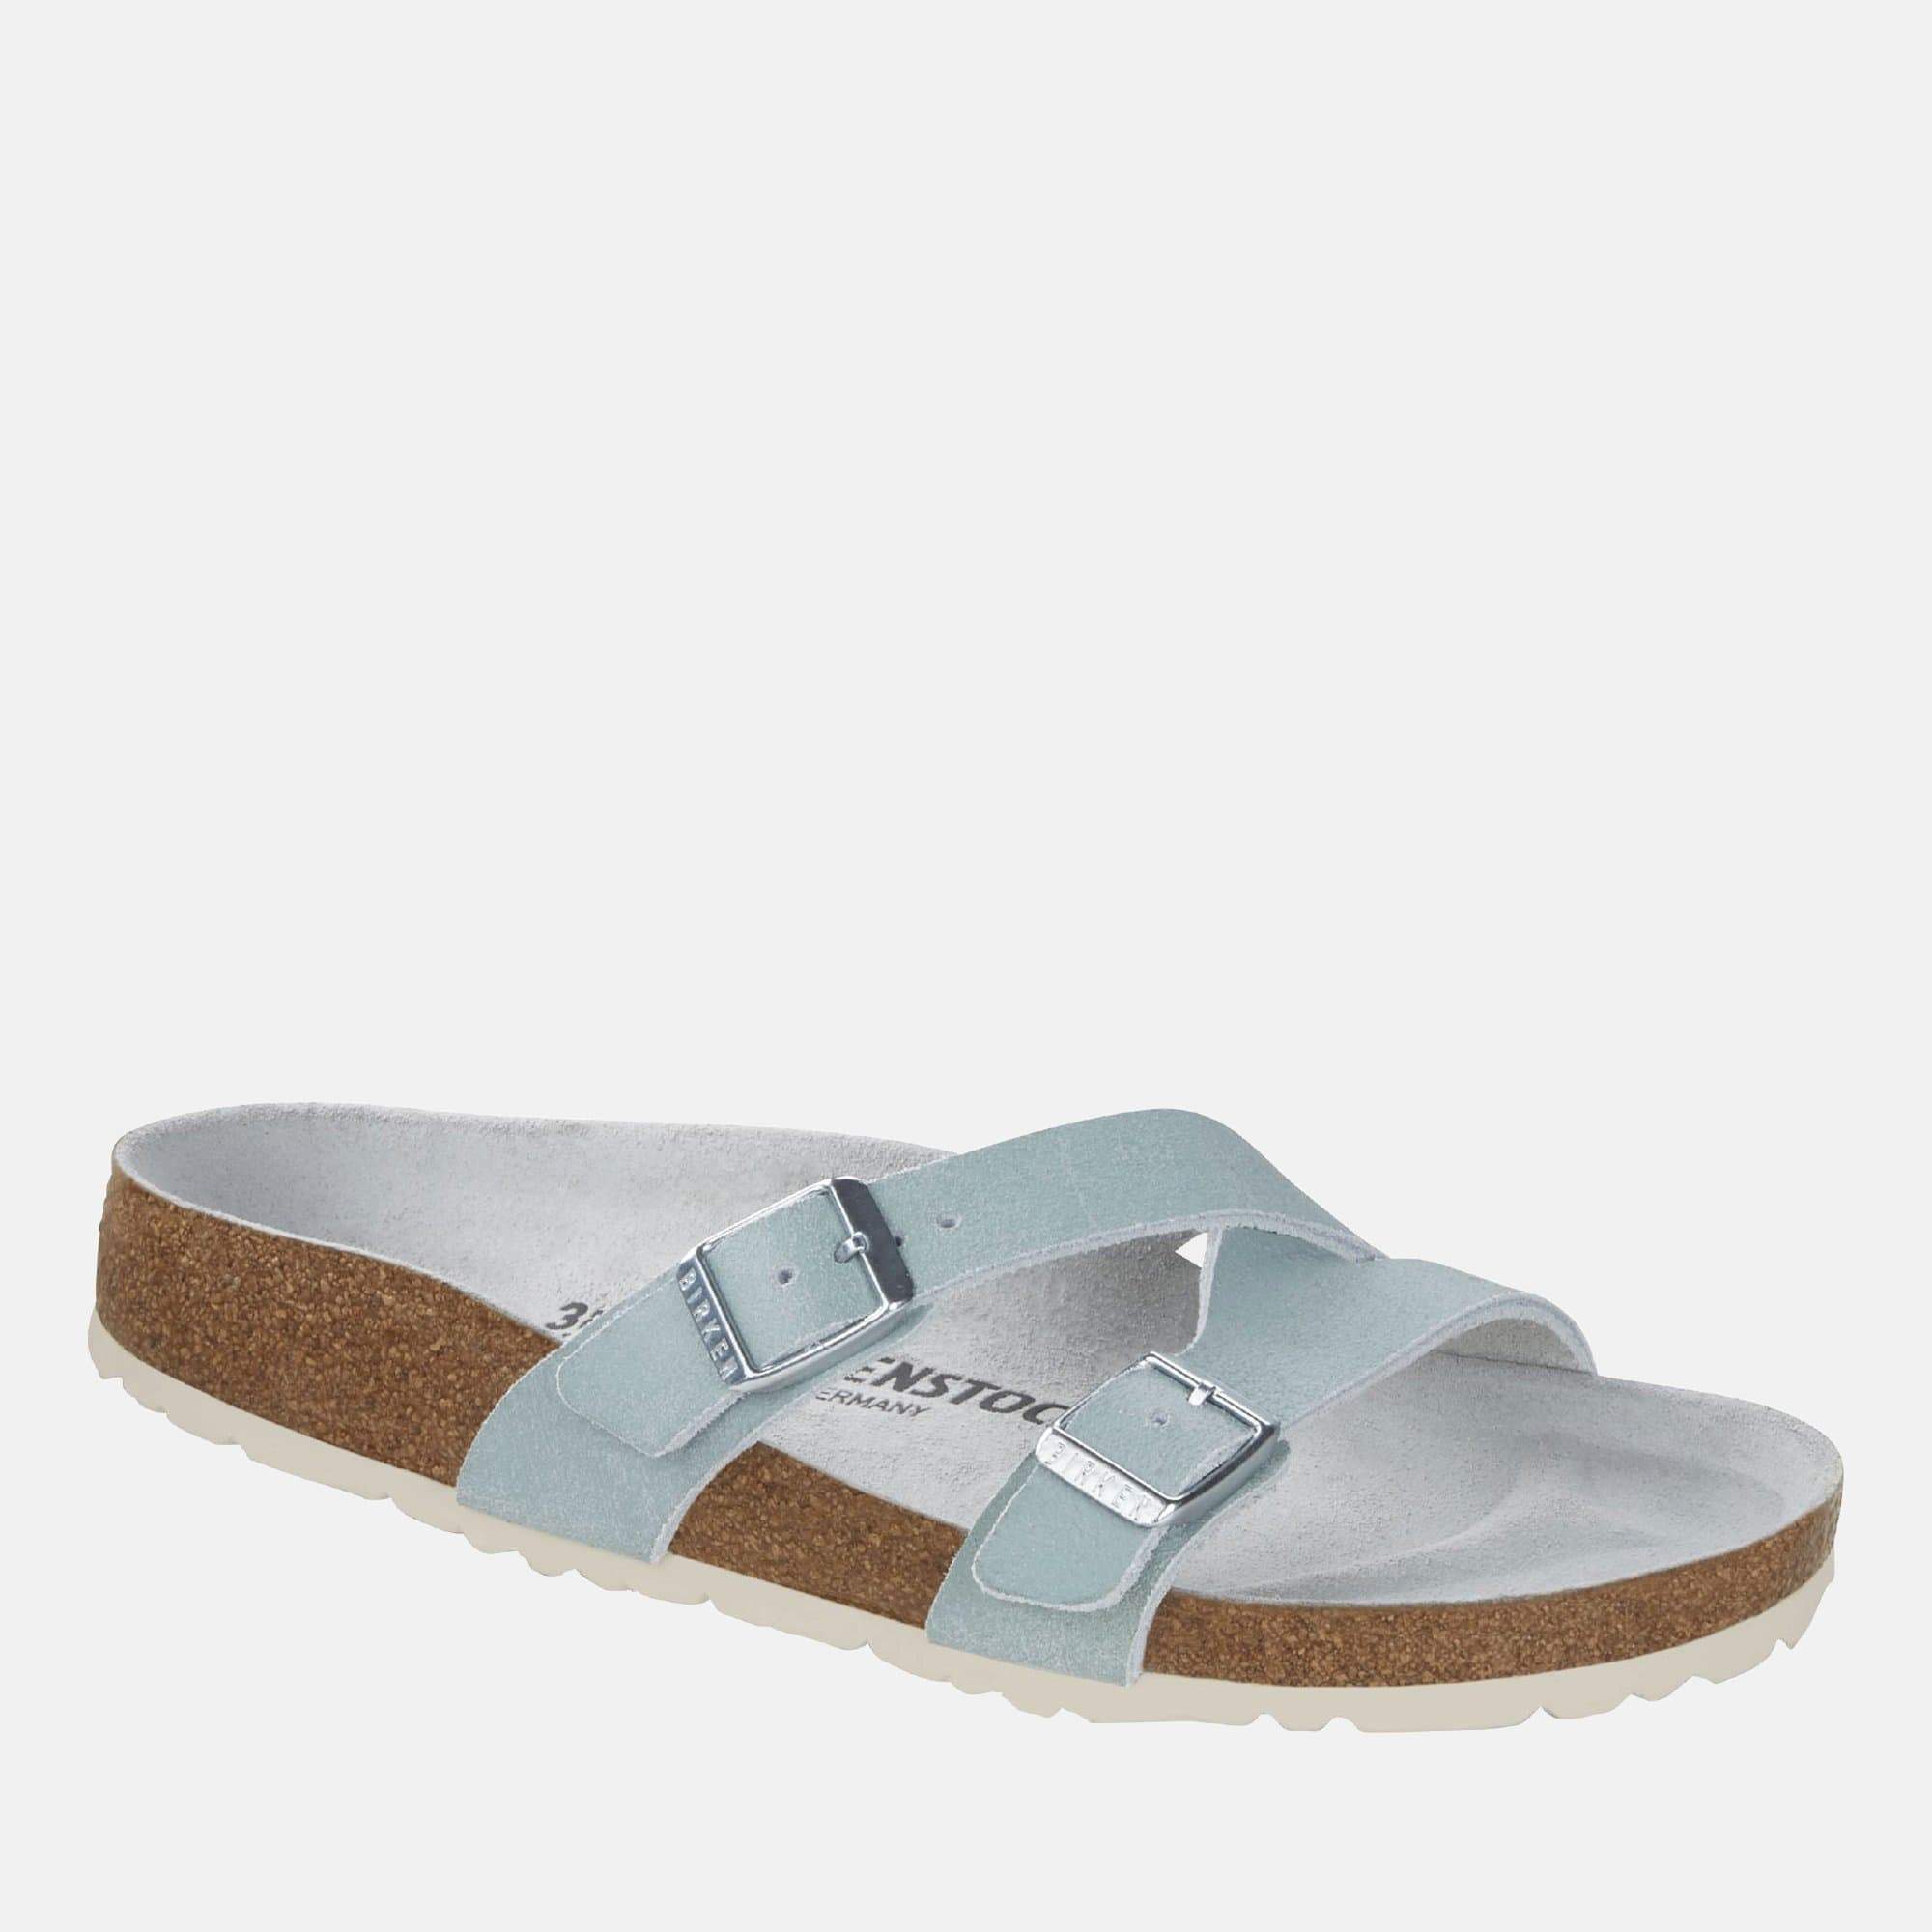 birkenstock summer sandals